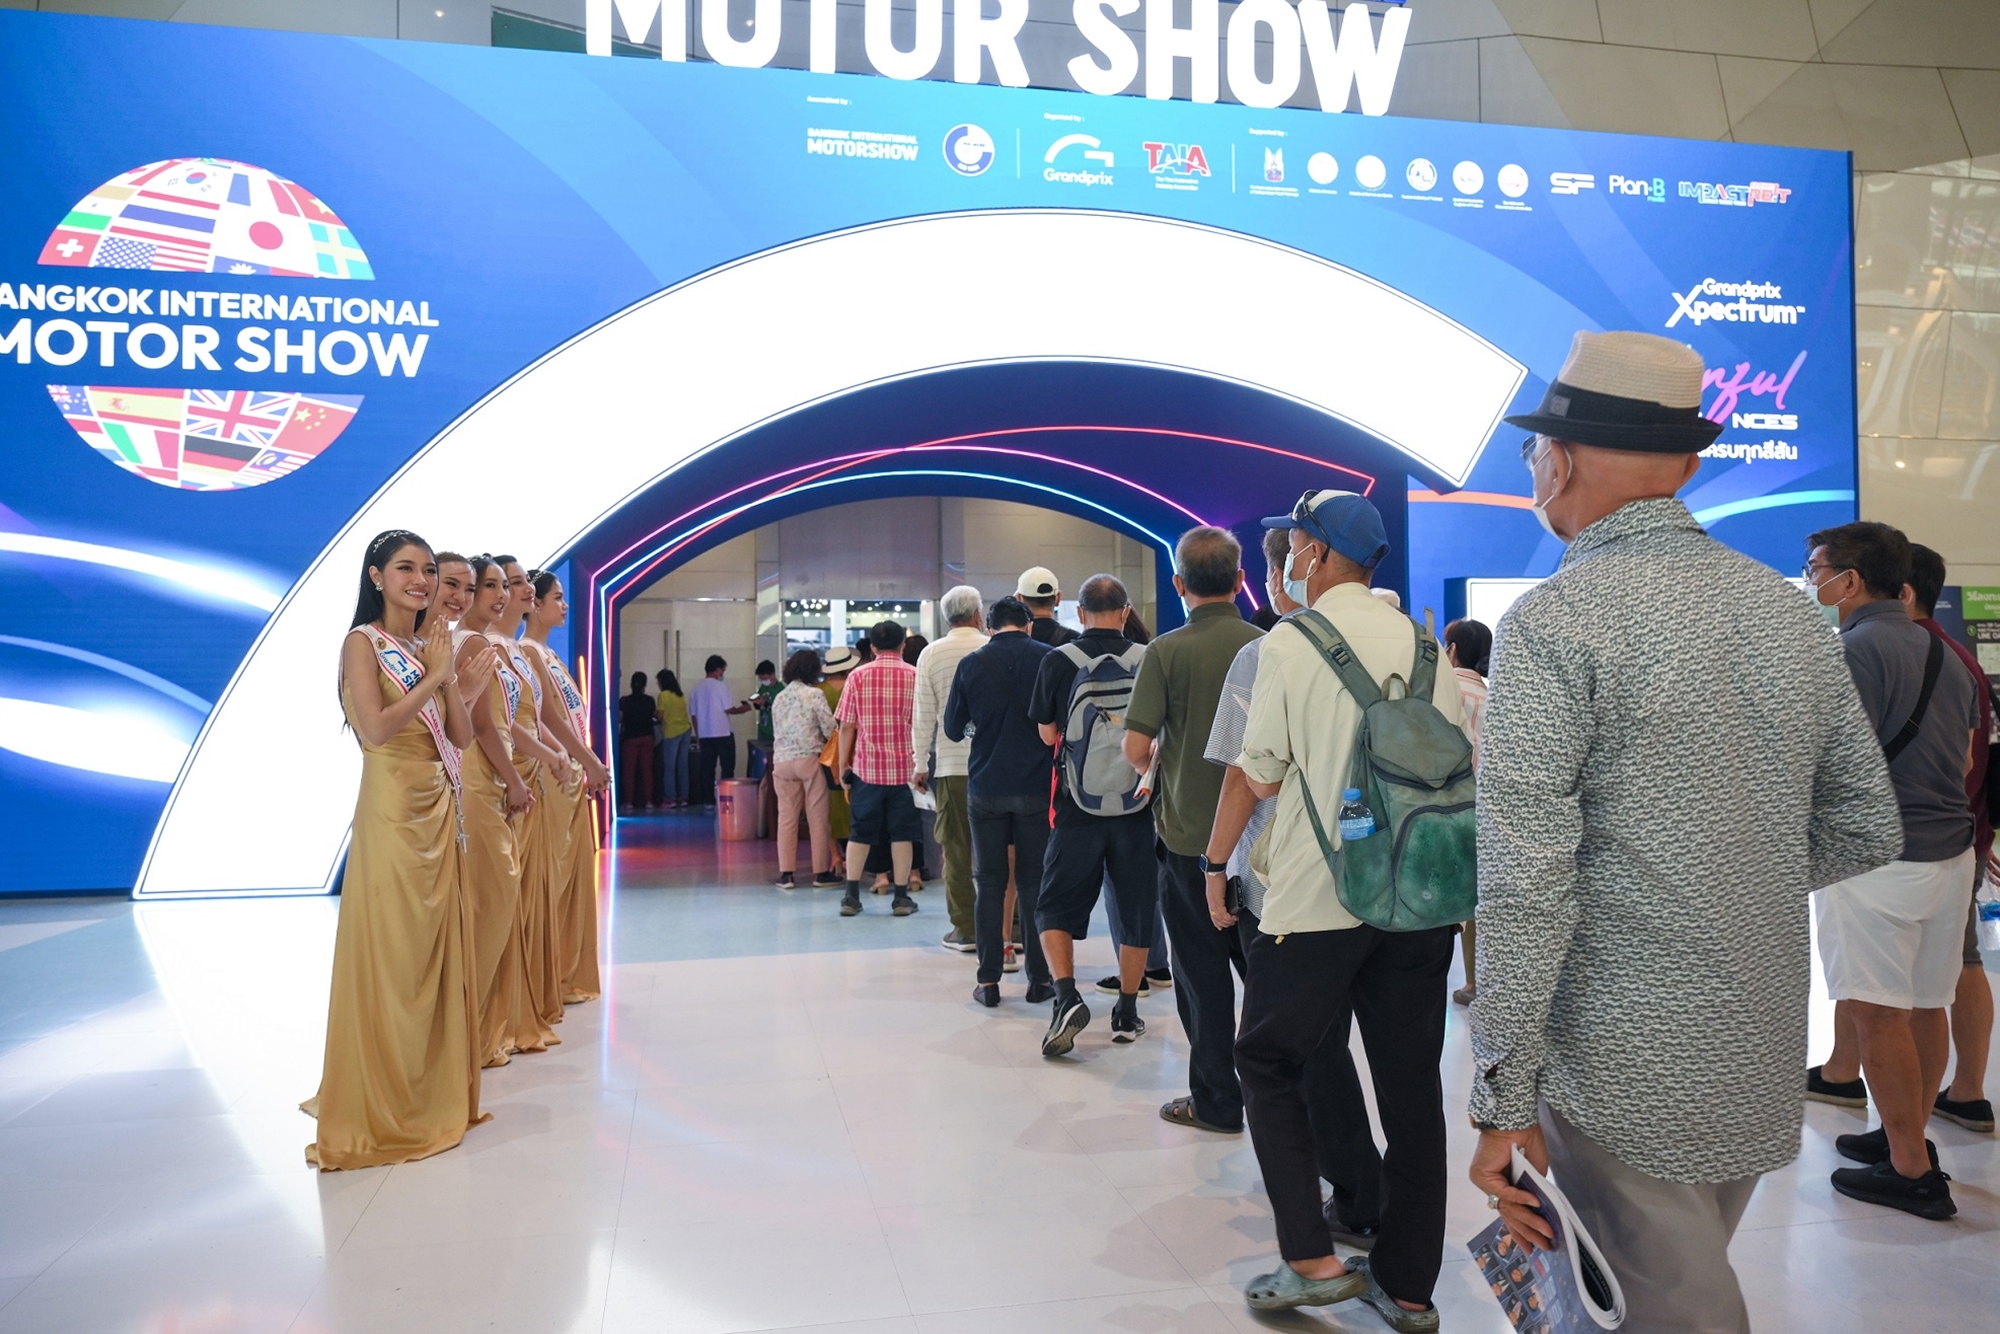 Bangkok Motor Show sắp diễn ra và đây là những điều cần biết: Đông khách gấp hơn 4 lần VMS, không hủy ngay cả những năm khủng hoảng nhất - ảnh 14